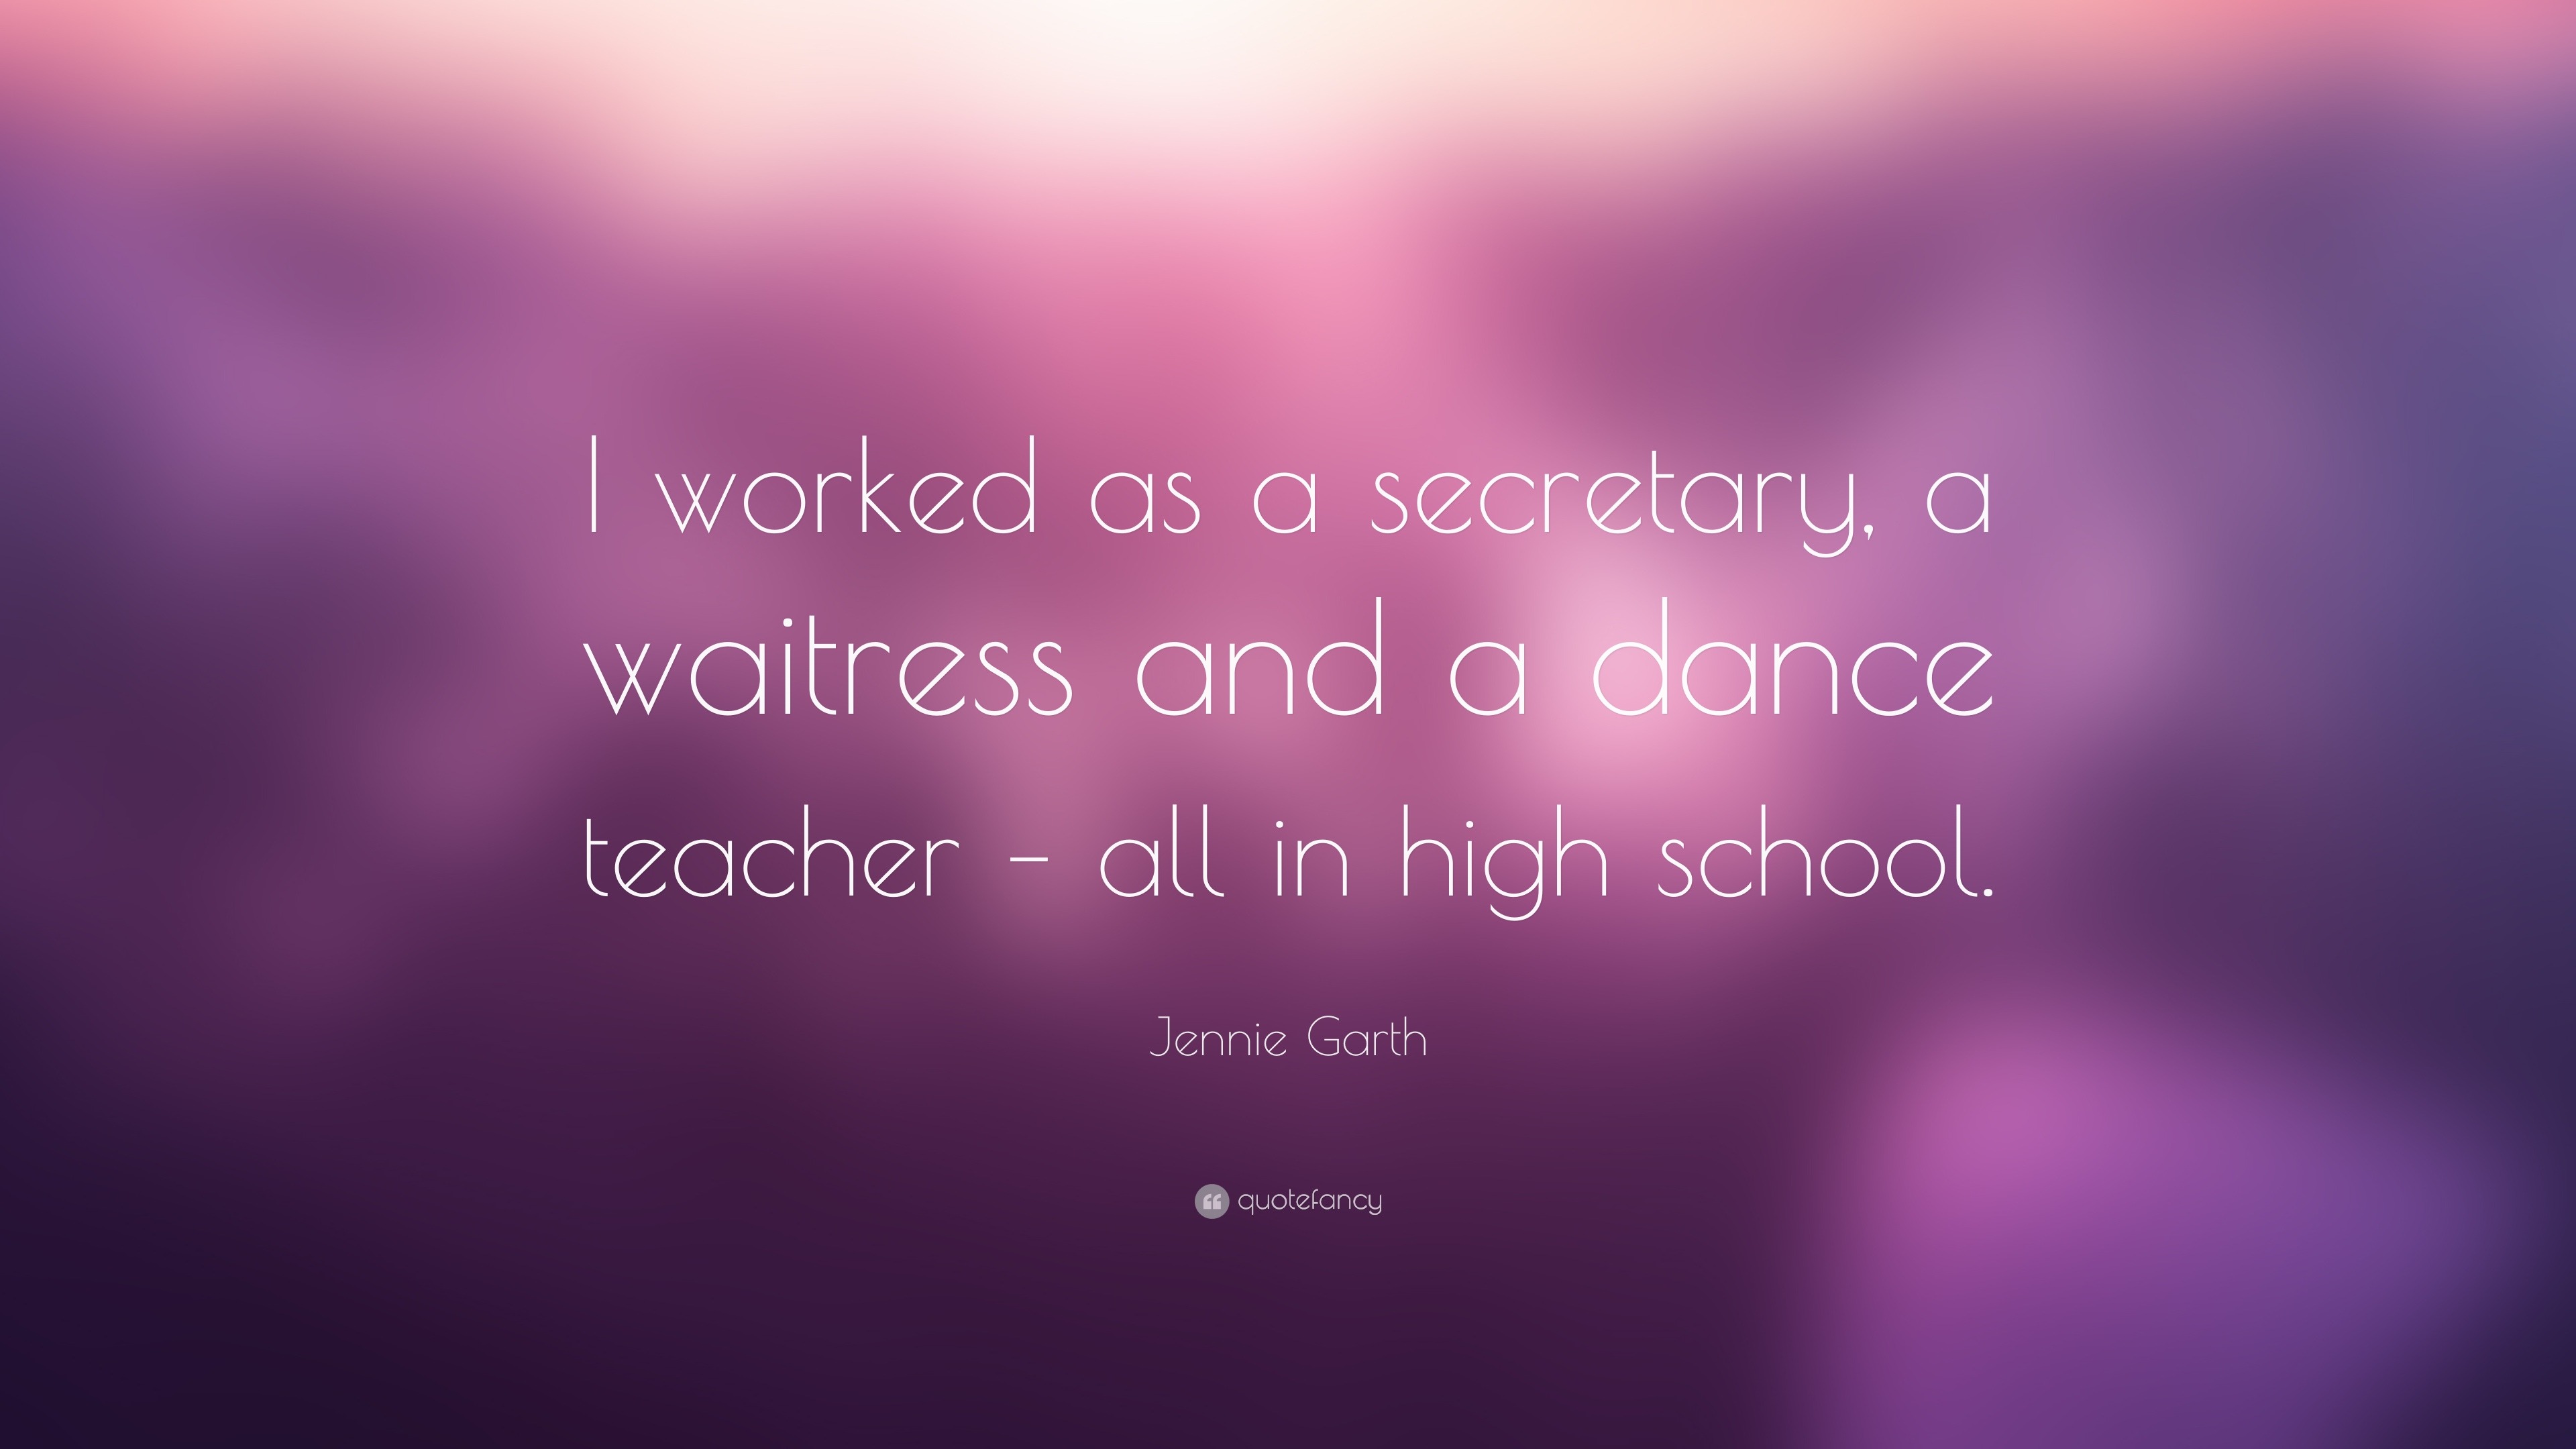 school secretary quotes